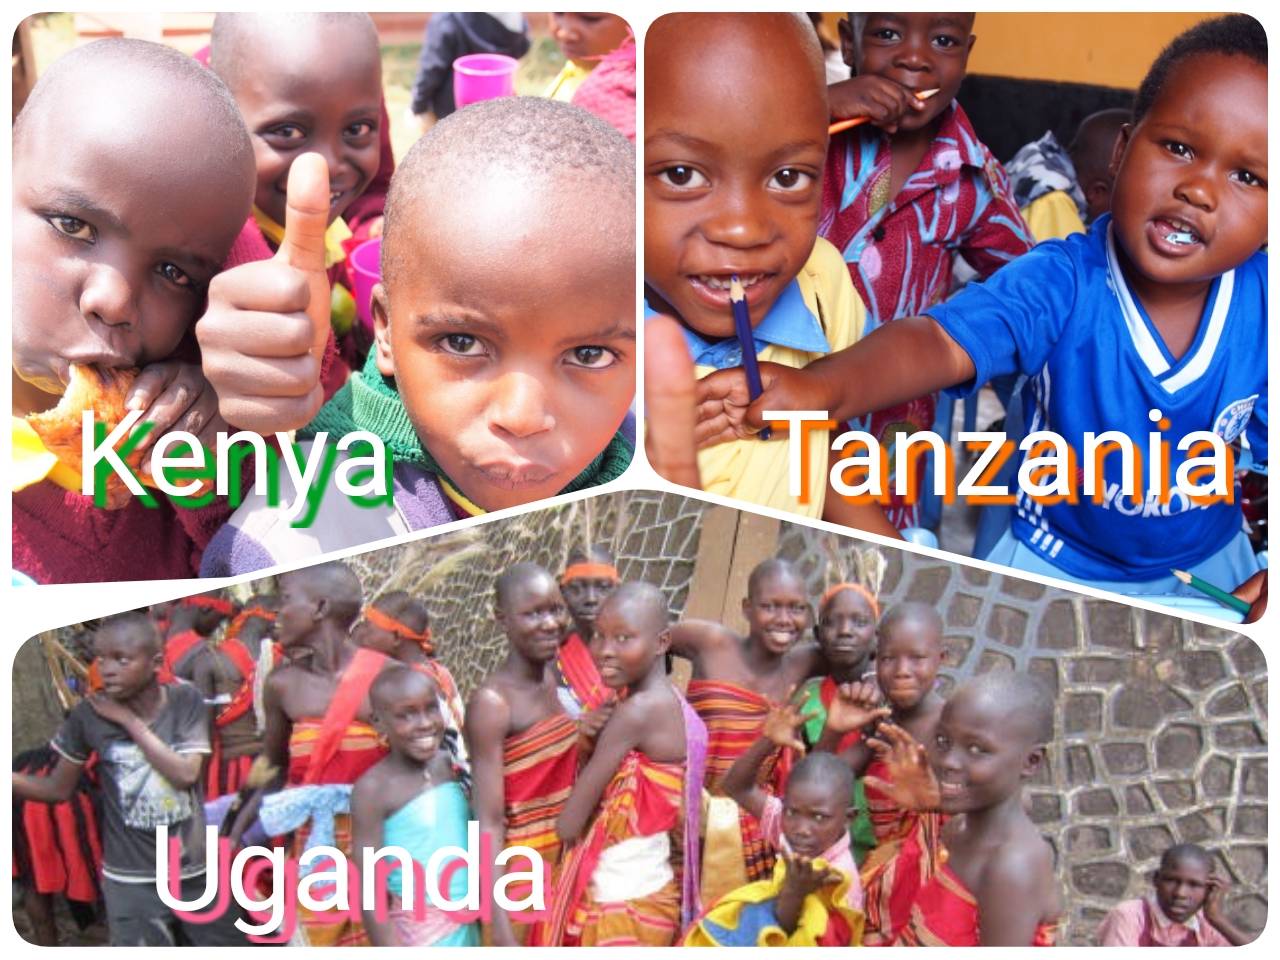 ケニア、ウガンダ、タンザニア。アフリカ人気3か国の違いと共通点。